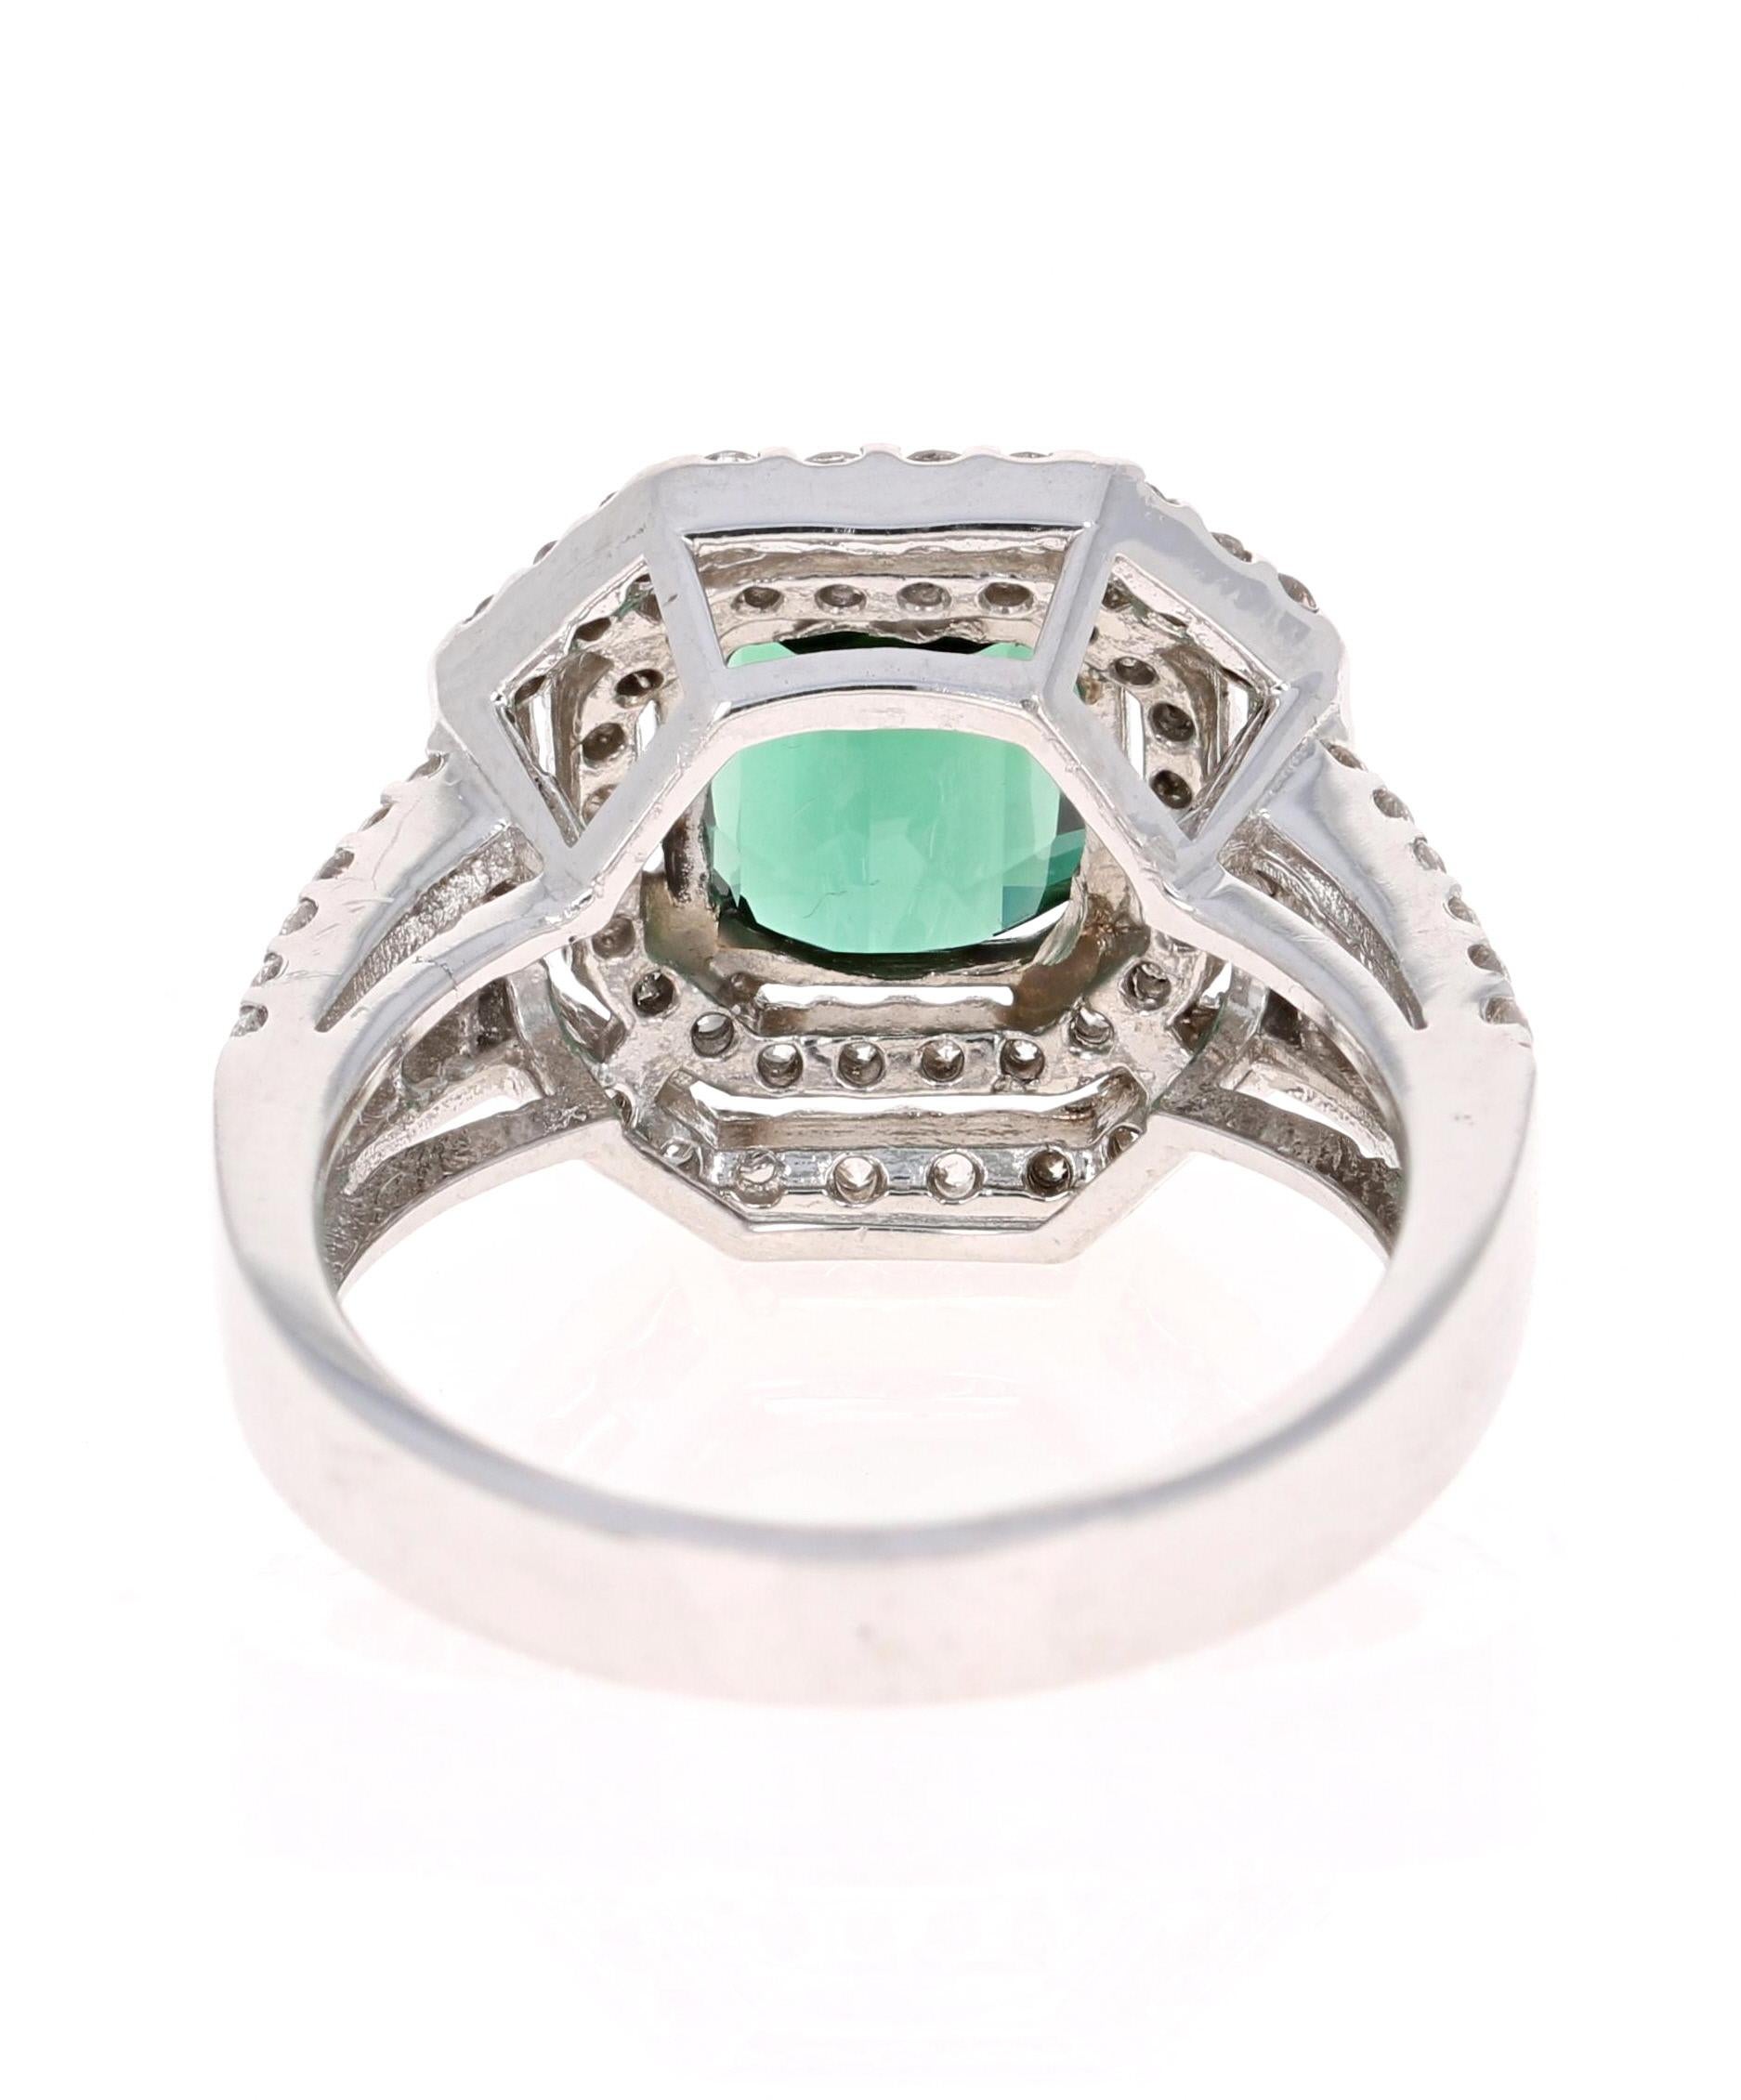 Asscher Cut 3.04 Carat Green Tourmaline and Diamond Ring 14 Karat White Gold Ring For Sale